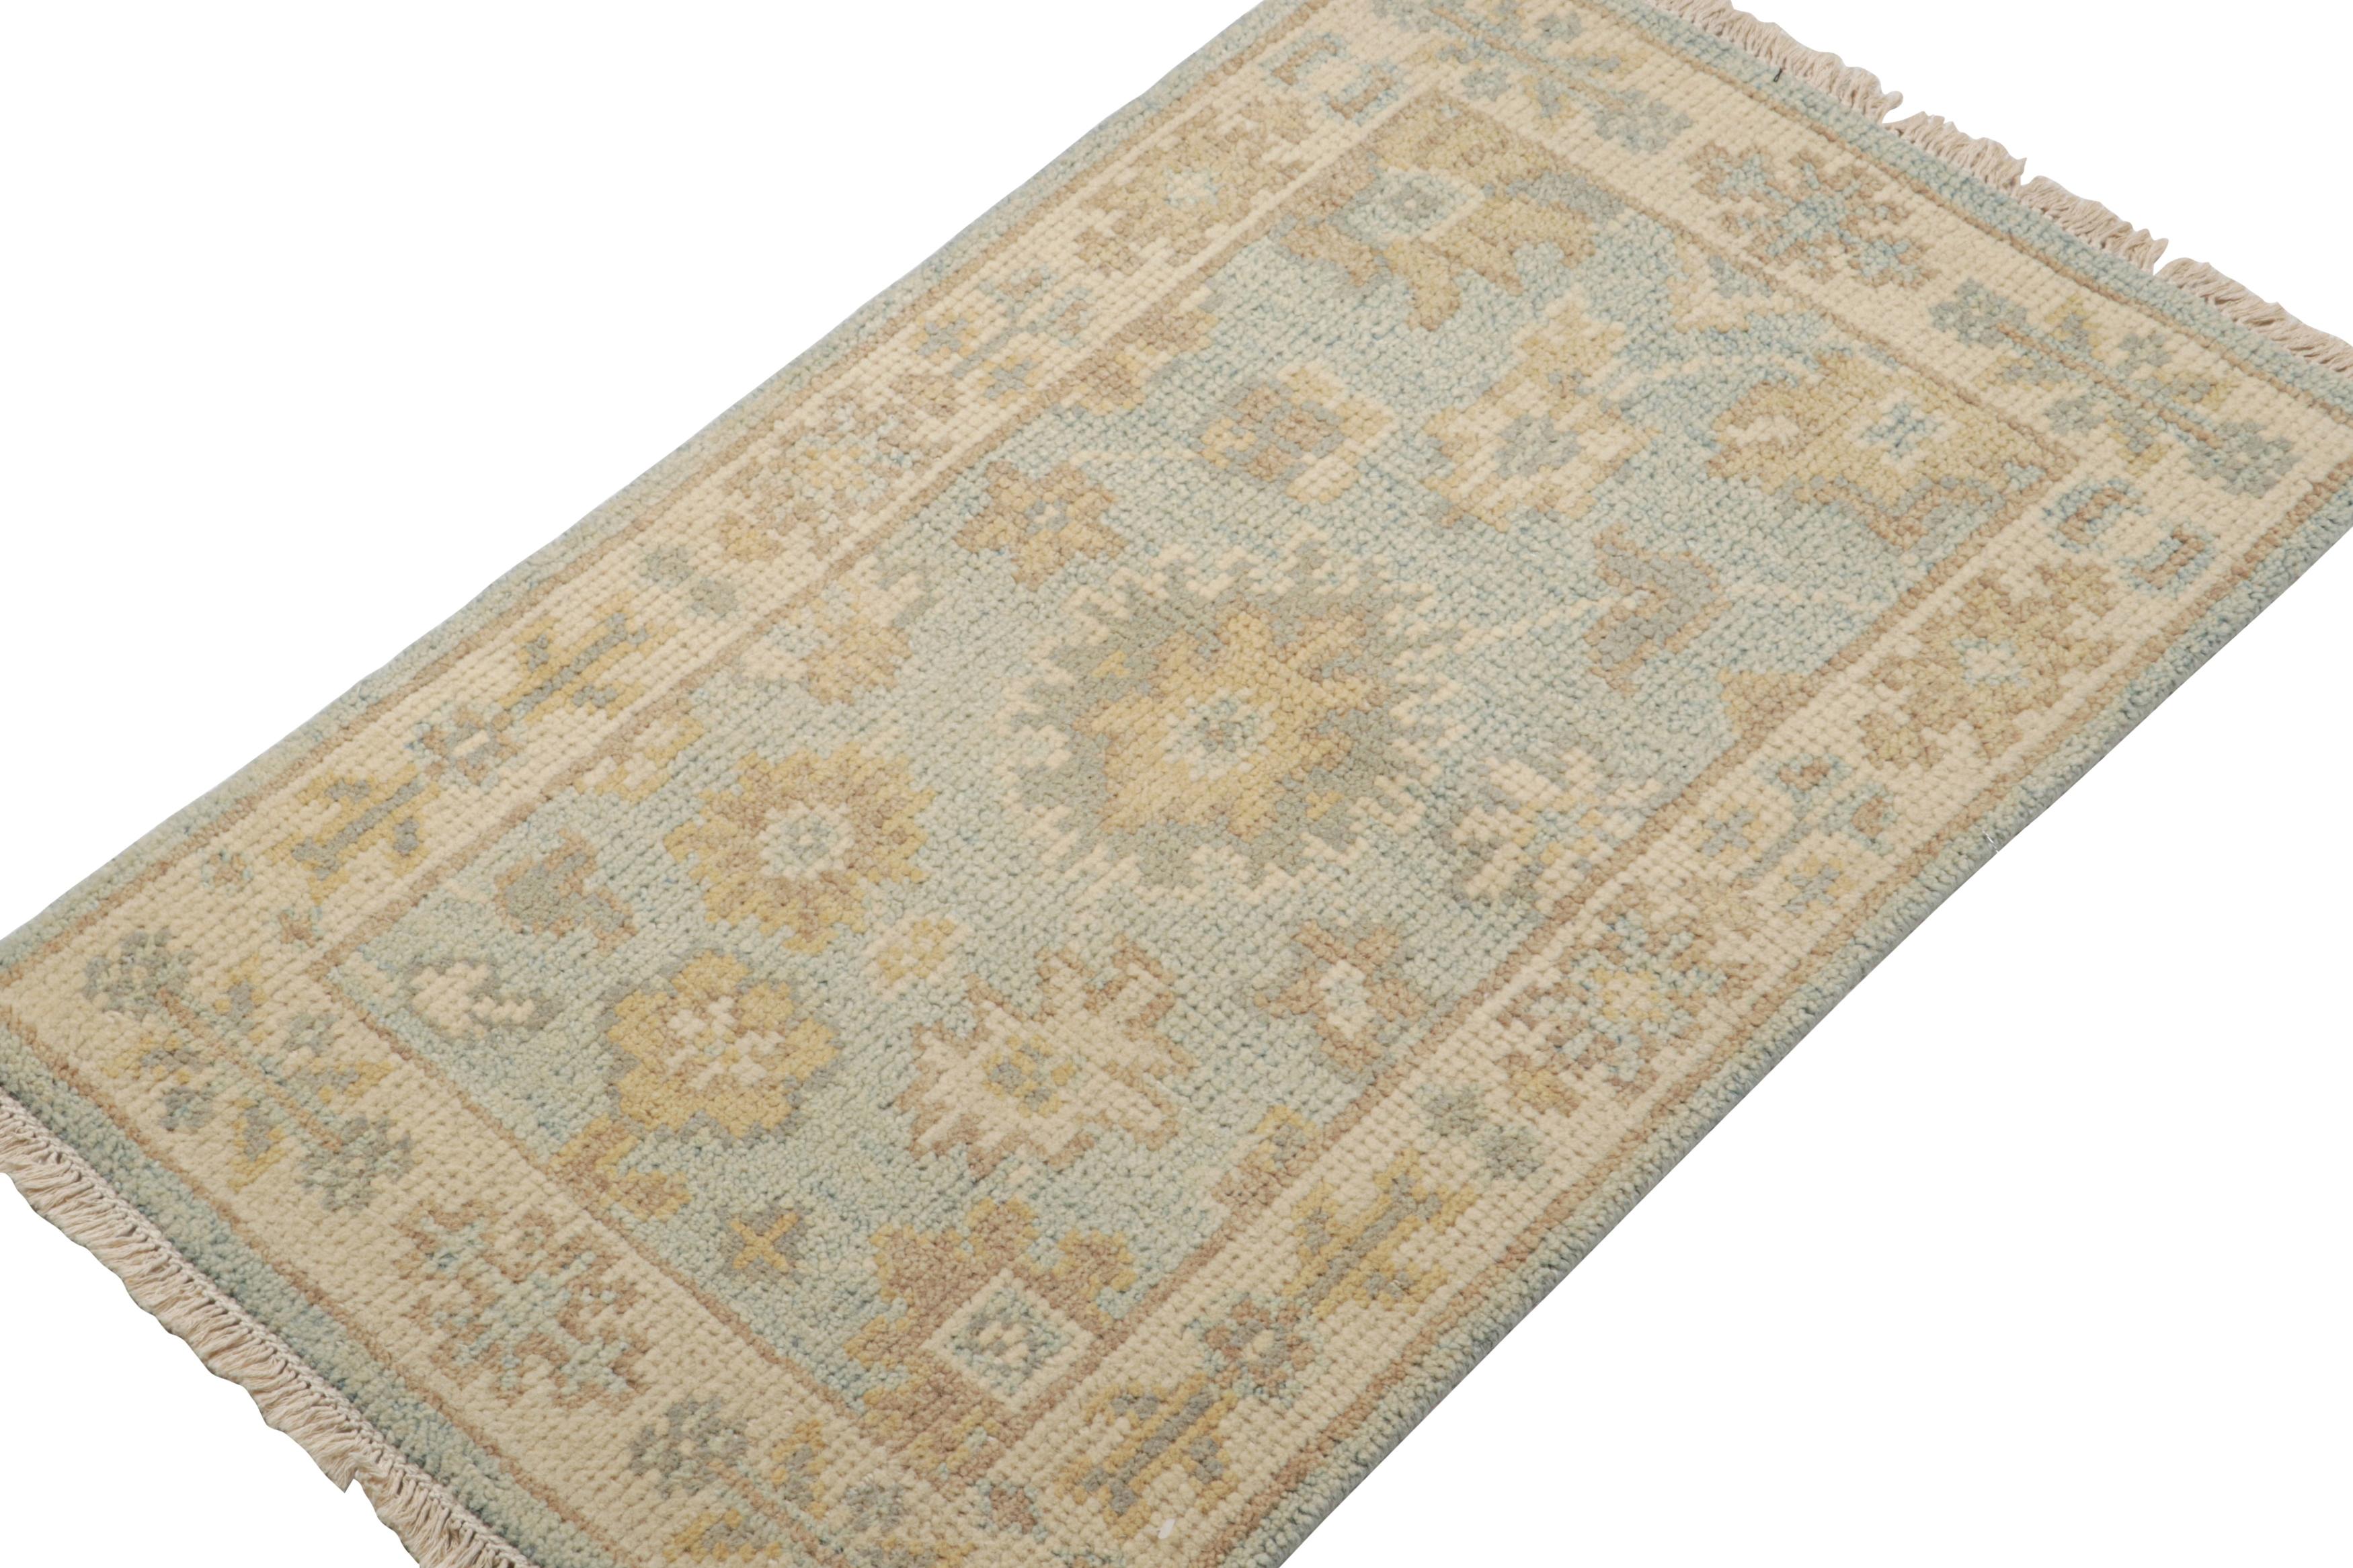 Noué à la main en laine,  ce tapis d'accent 2x3 fait partie d'une nouvelle collection de tapis en format cadeau dans la ligne Oushak de la collection Modern Classics de Rug & Kilim.

Sur le Design :

Inspiré par le style classique du tapis, ce motif